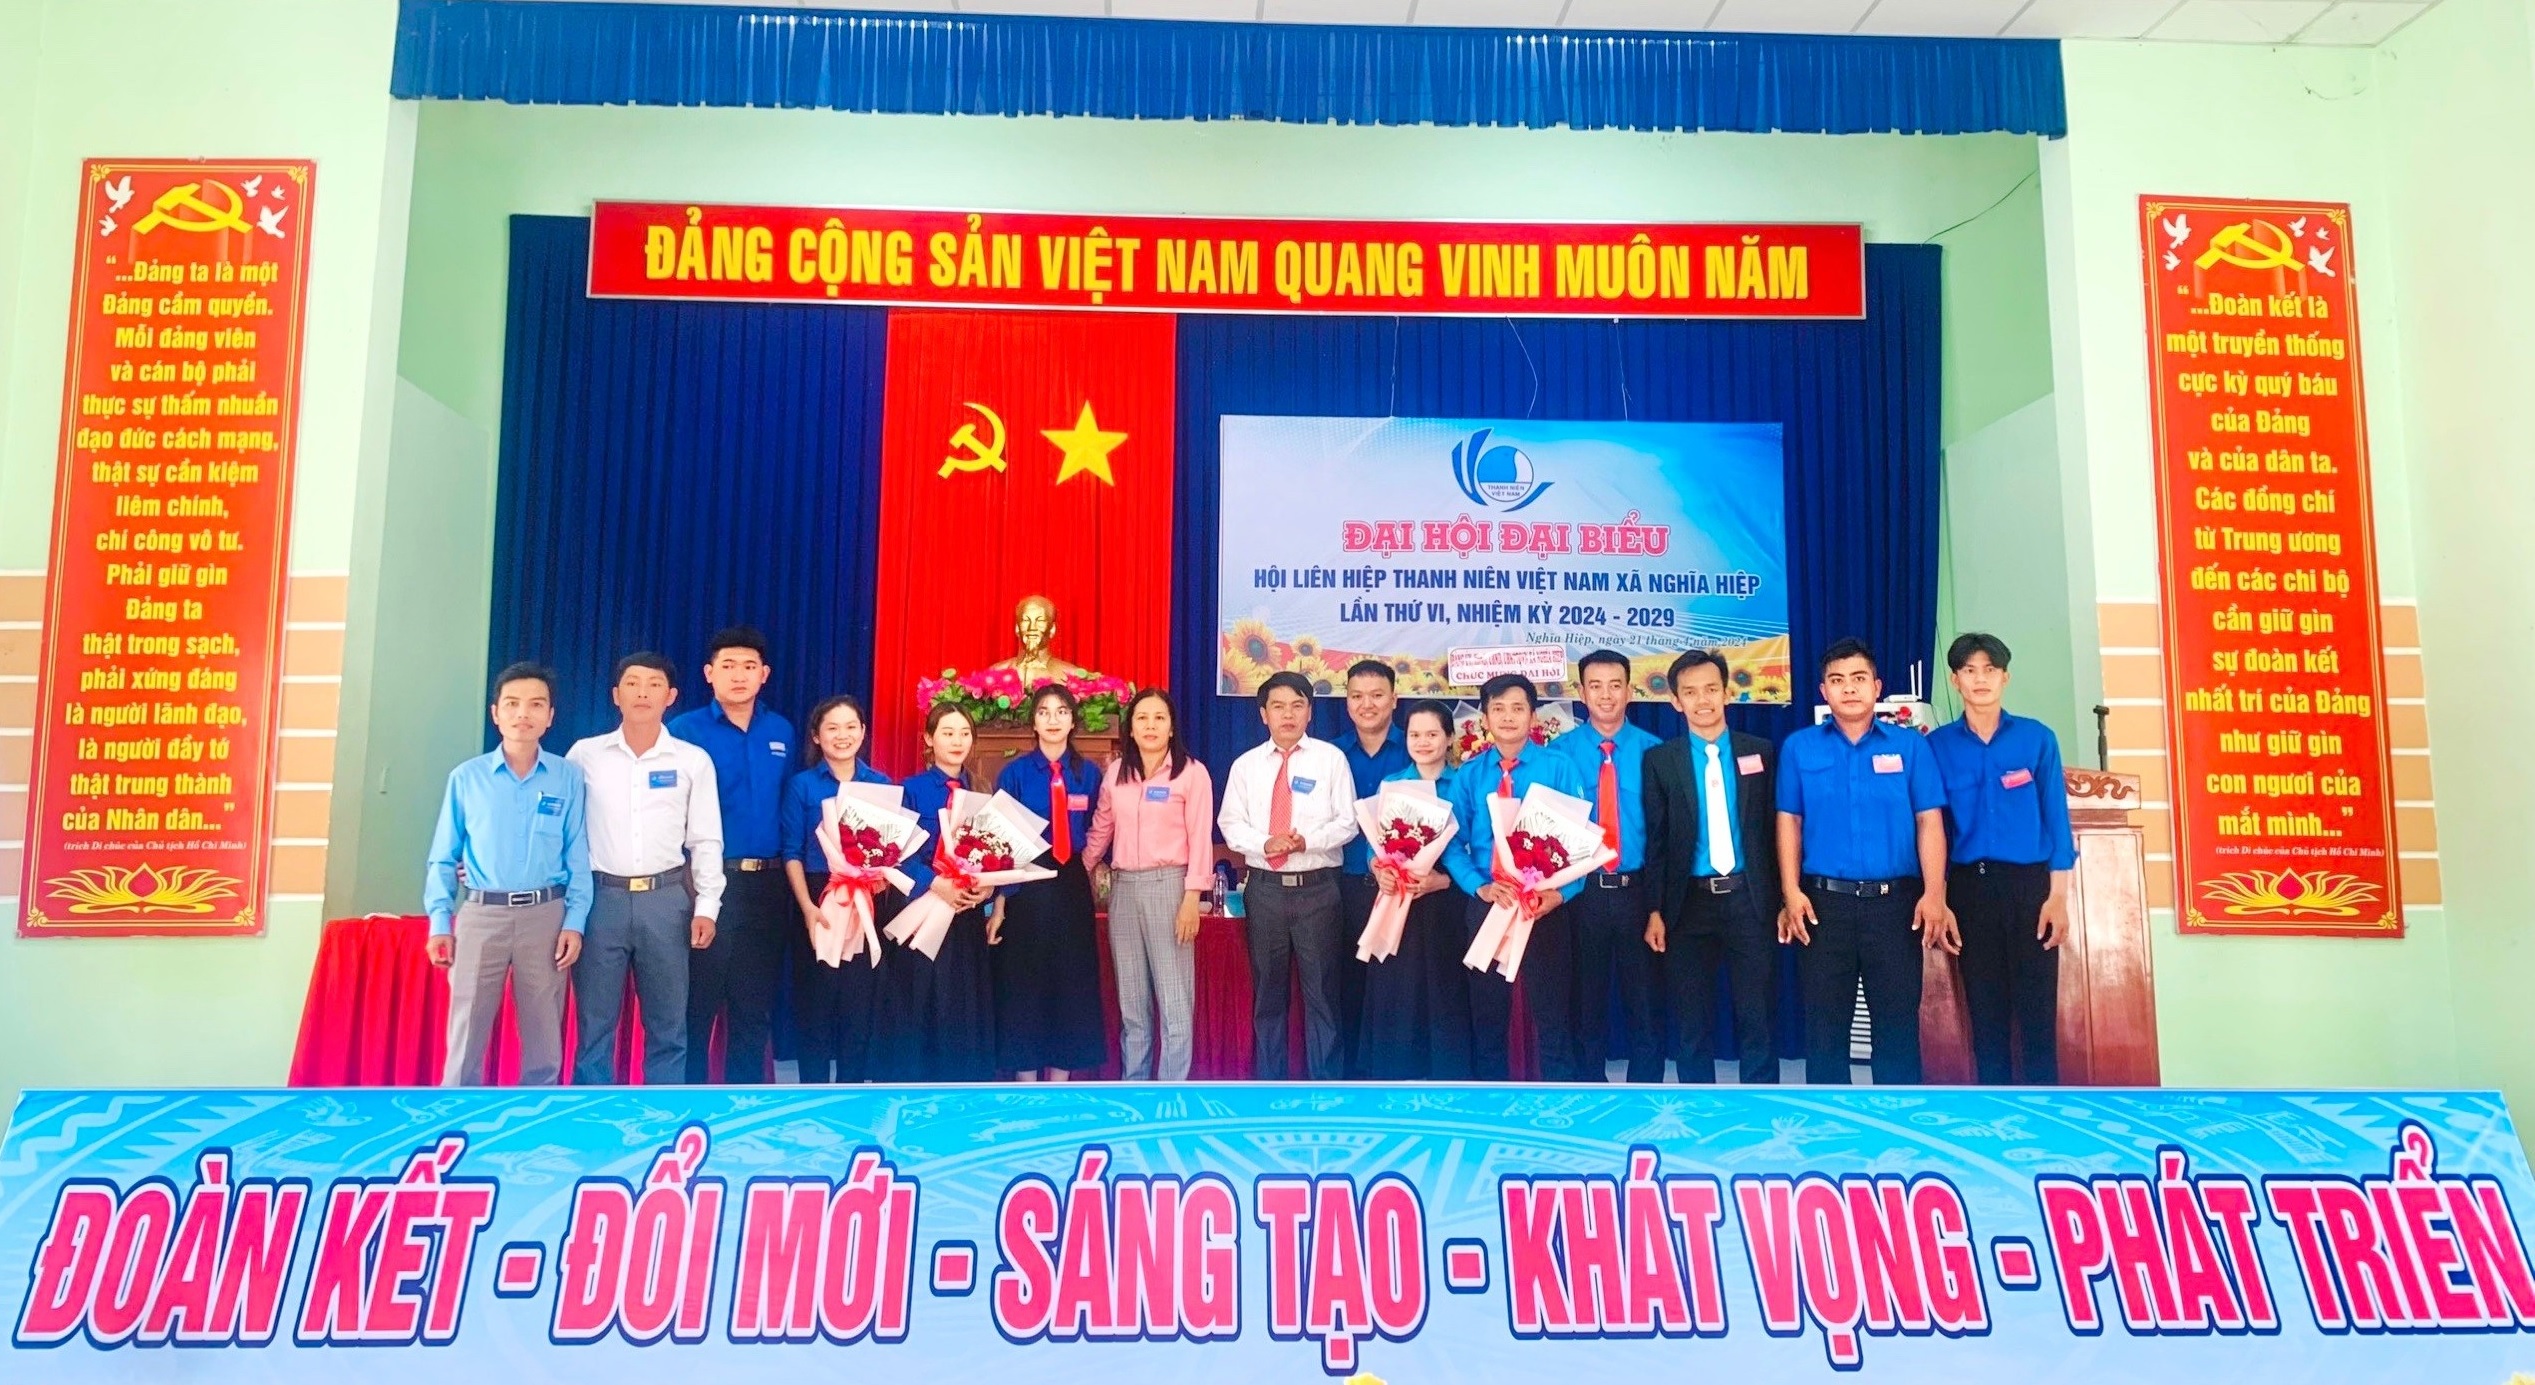 Hội LHTN Việt Nam xã Nghĩa Hiệp tổ chức Đại hội đại biểu lần thứ VI, nhiệm kỳ 2024-2029